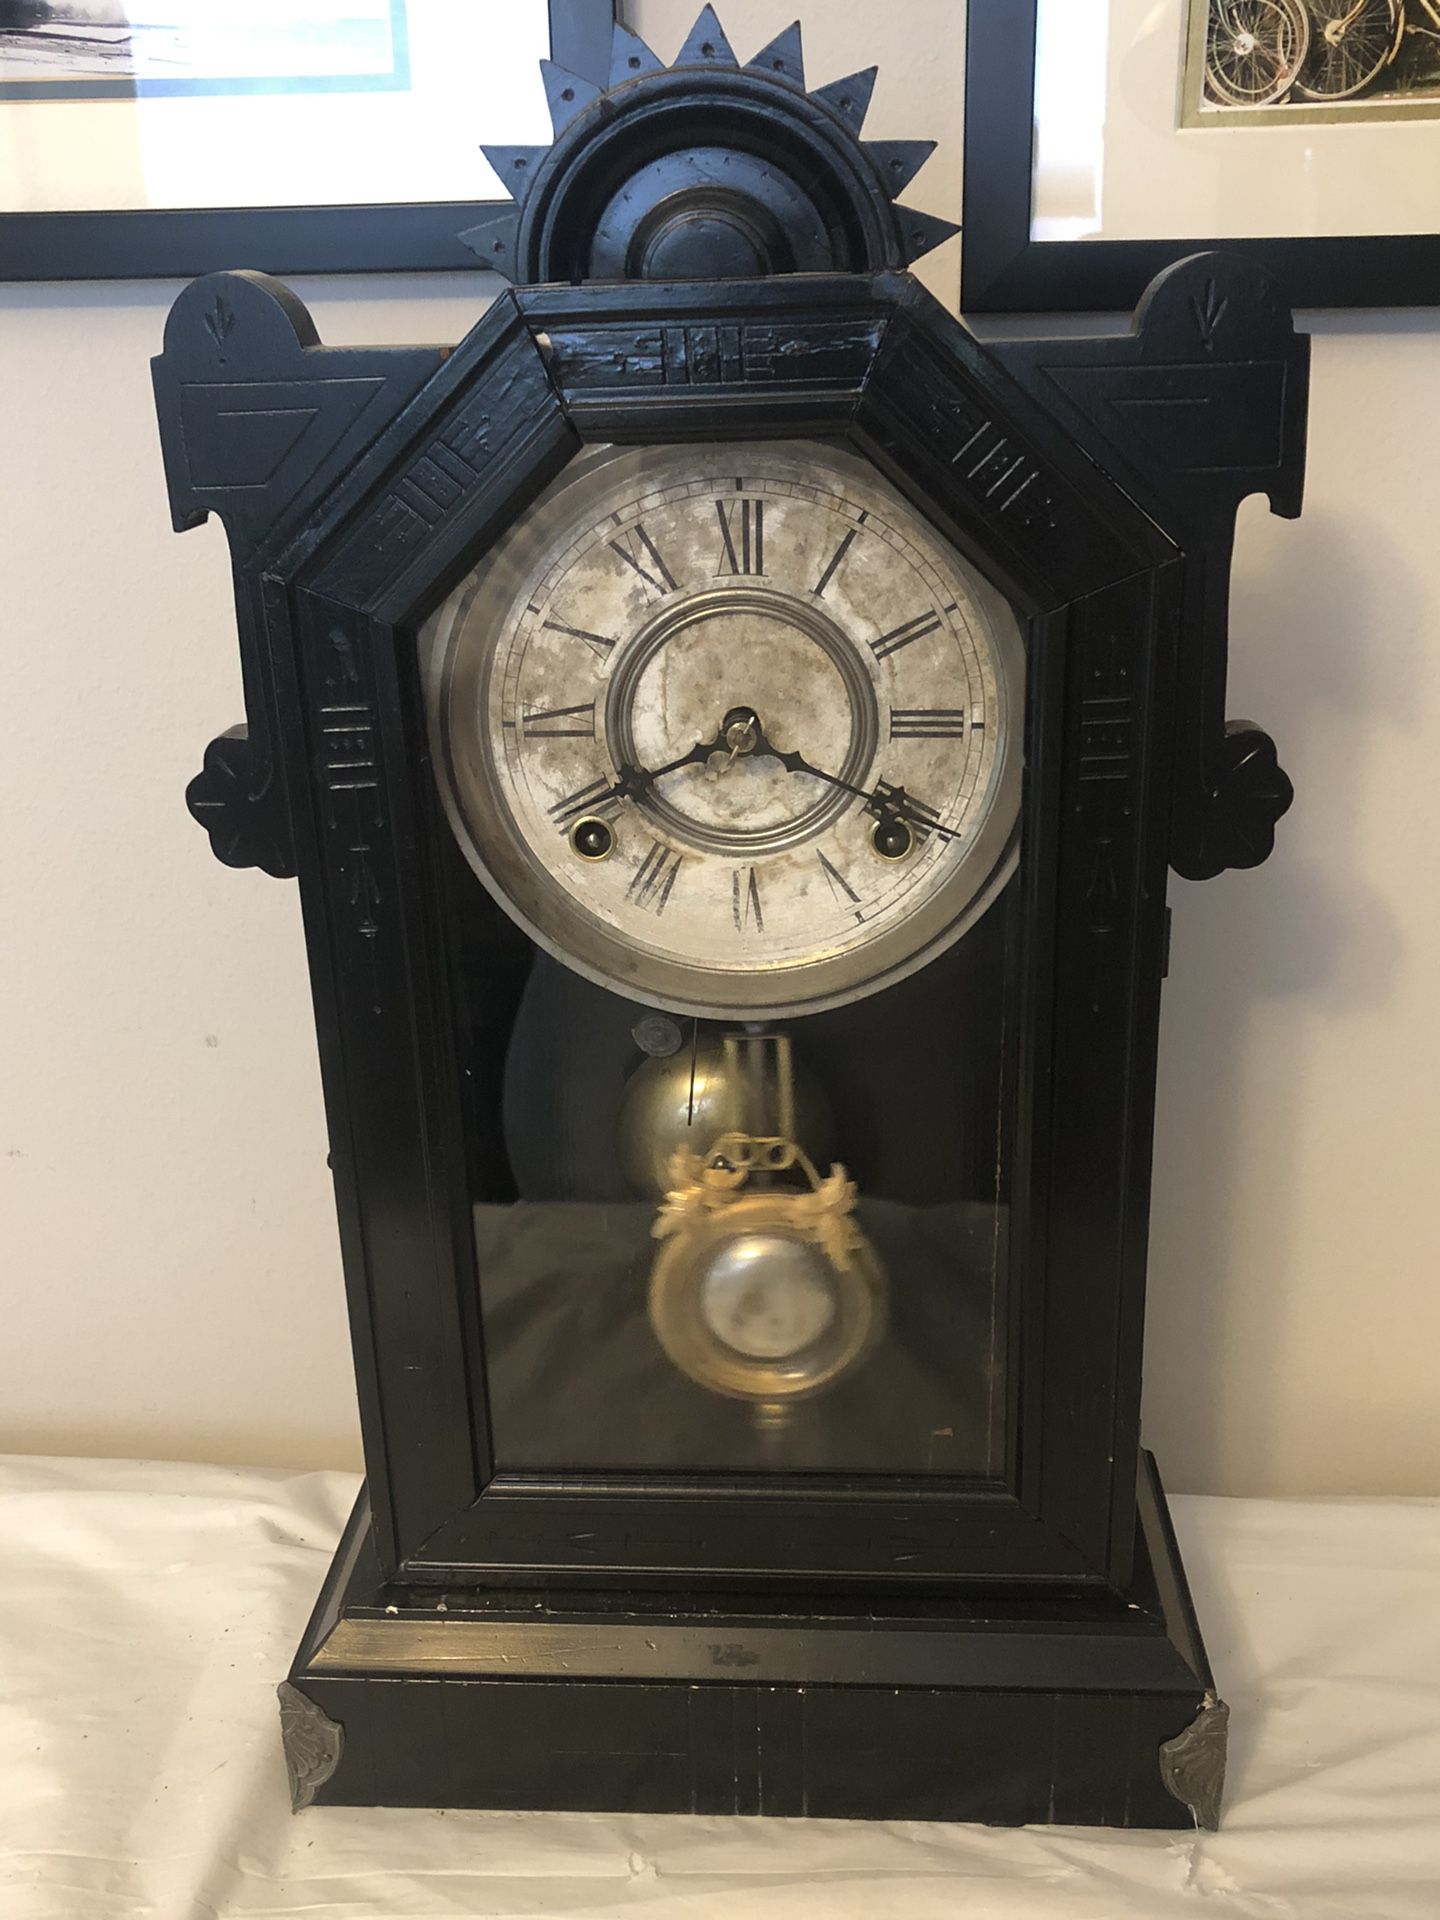 8 Day WML Gilbert Clocks 1890 Kitchen Mantle Clock WORKS GREAT